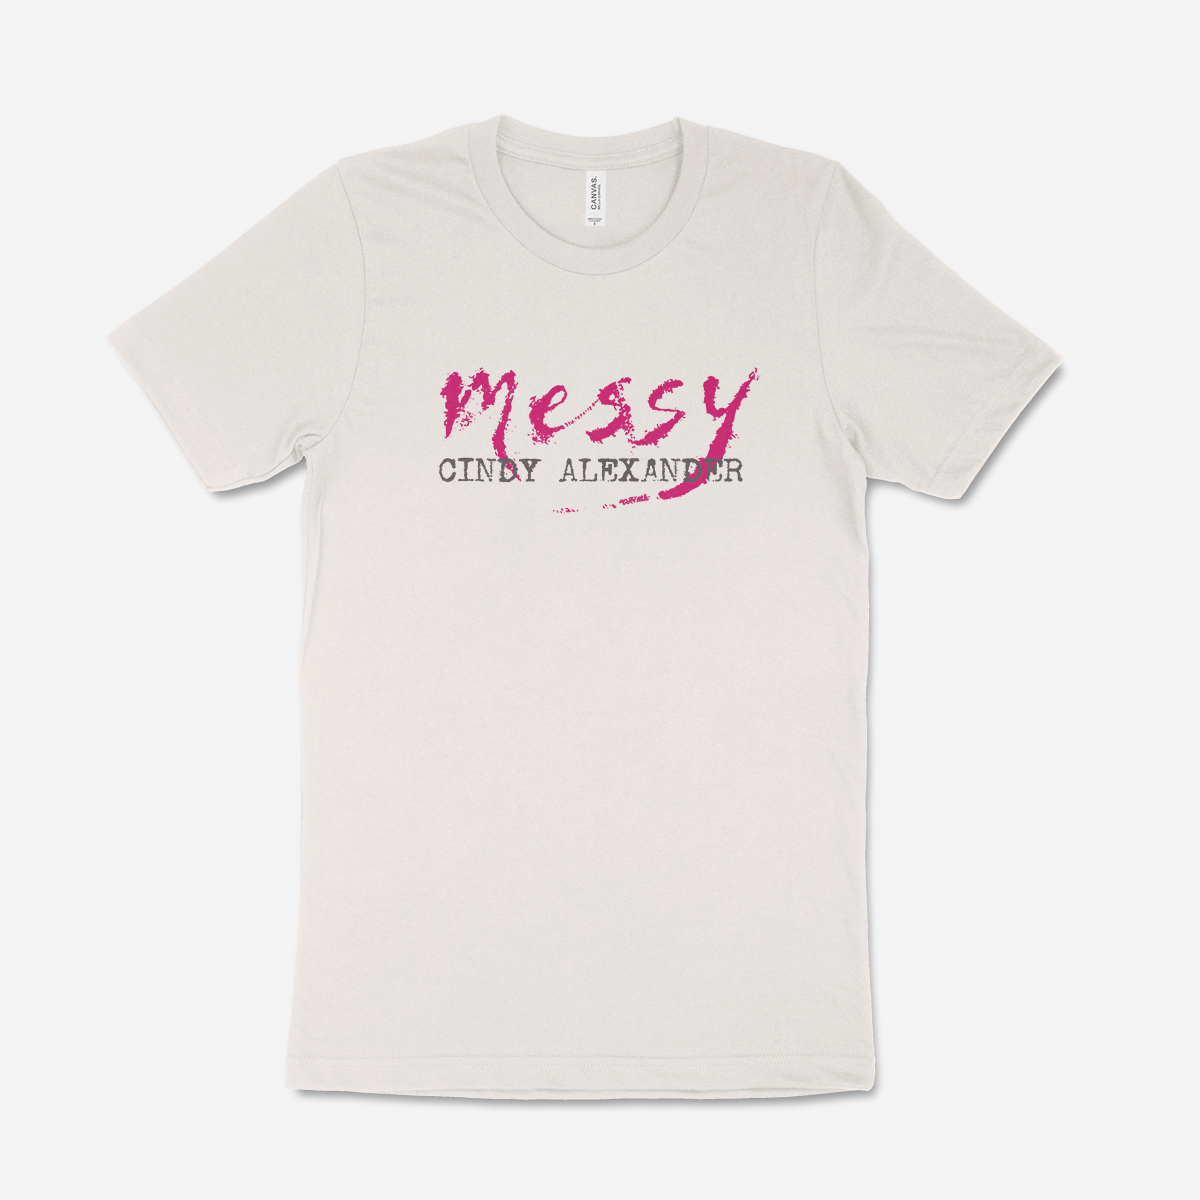 Messy - T-Shirt + Digital Album